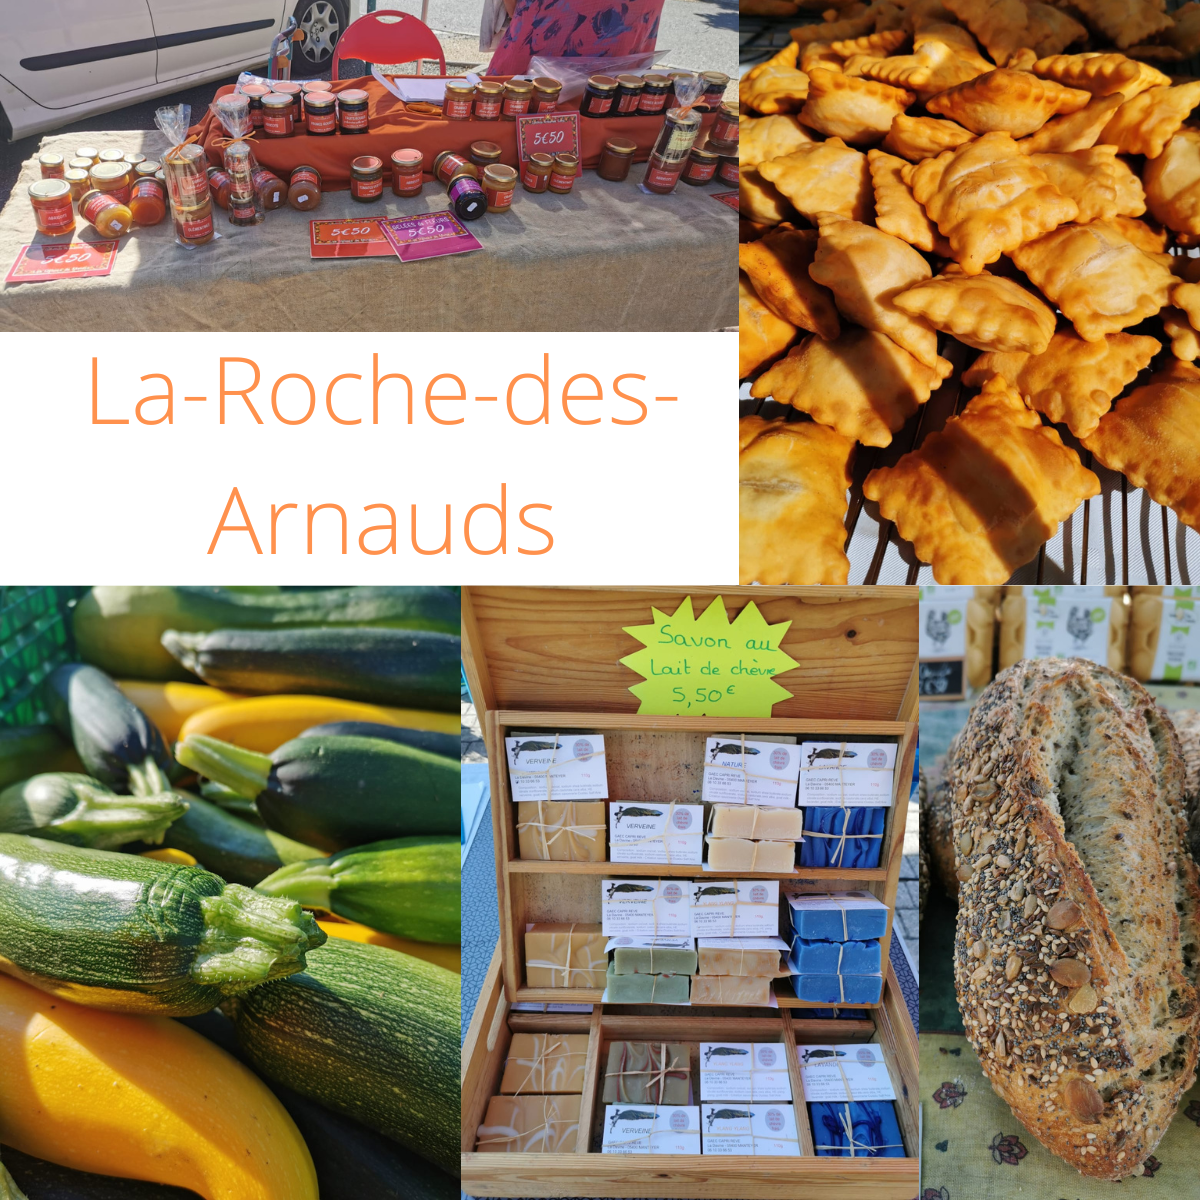 Marché de La Roche des Arnauds